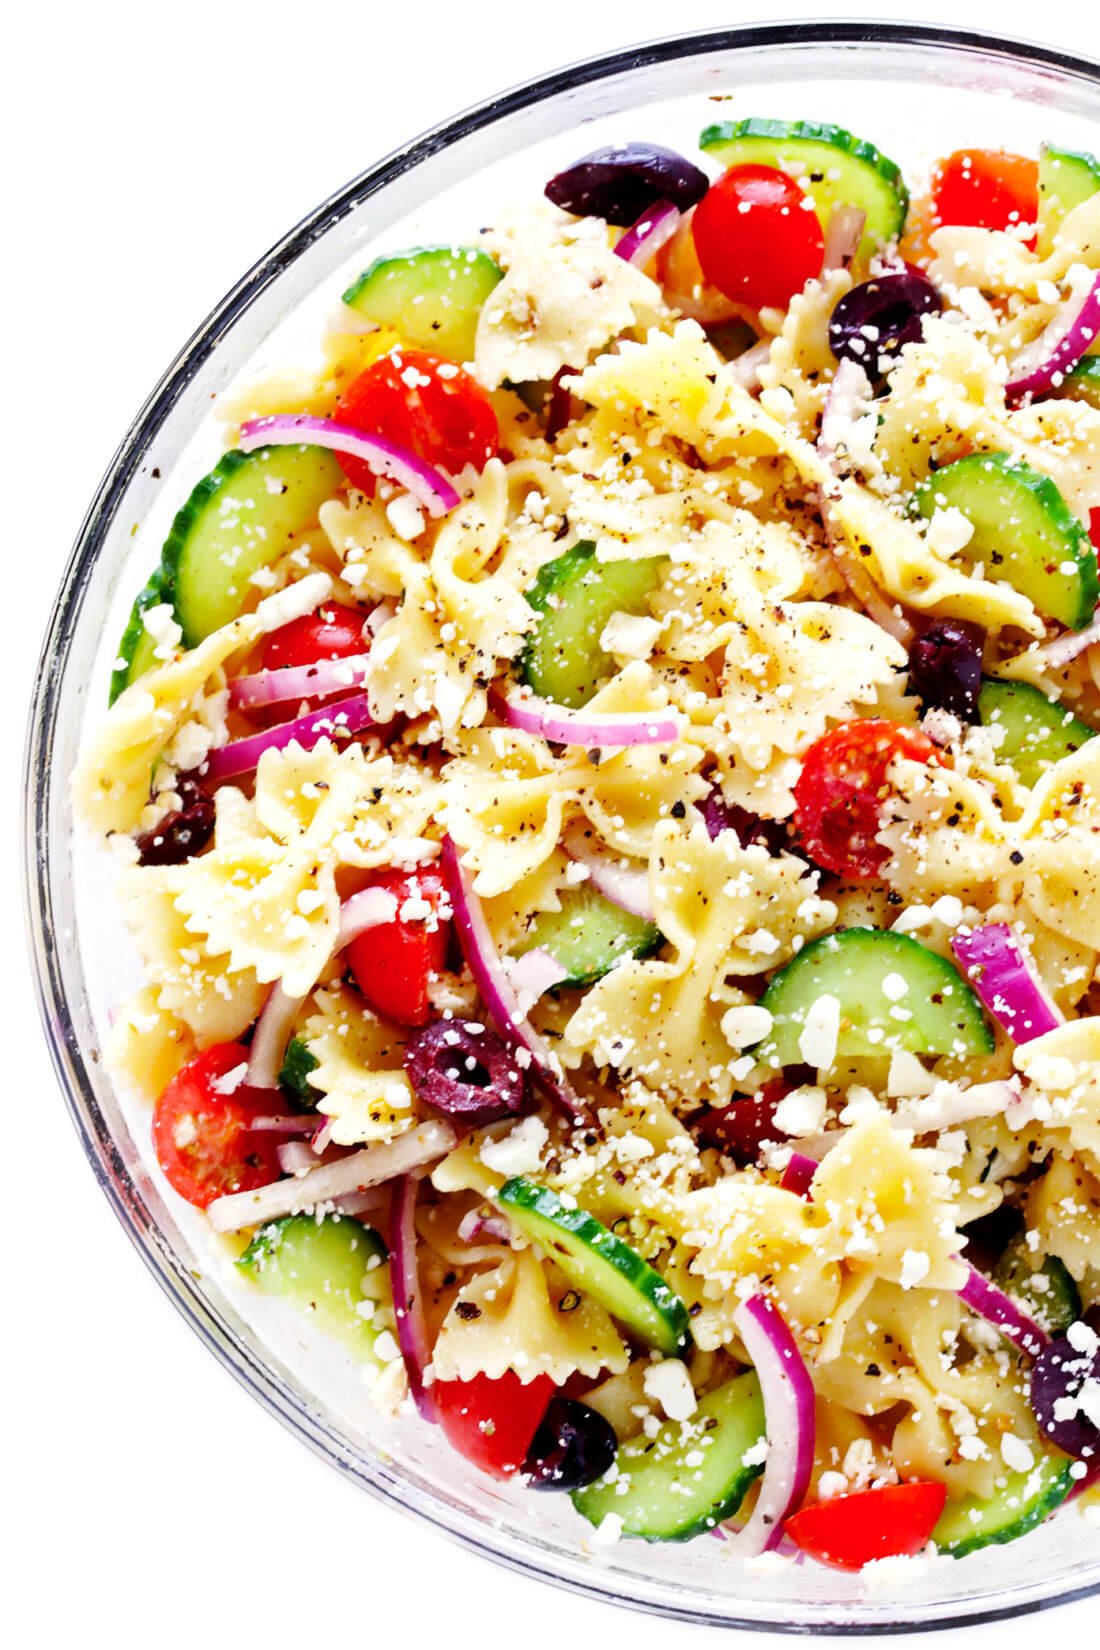 Mediterranean Pasta Salad Recipe